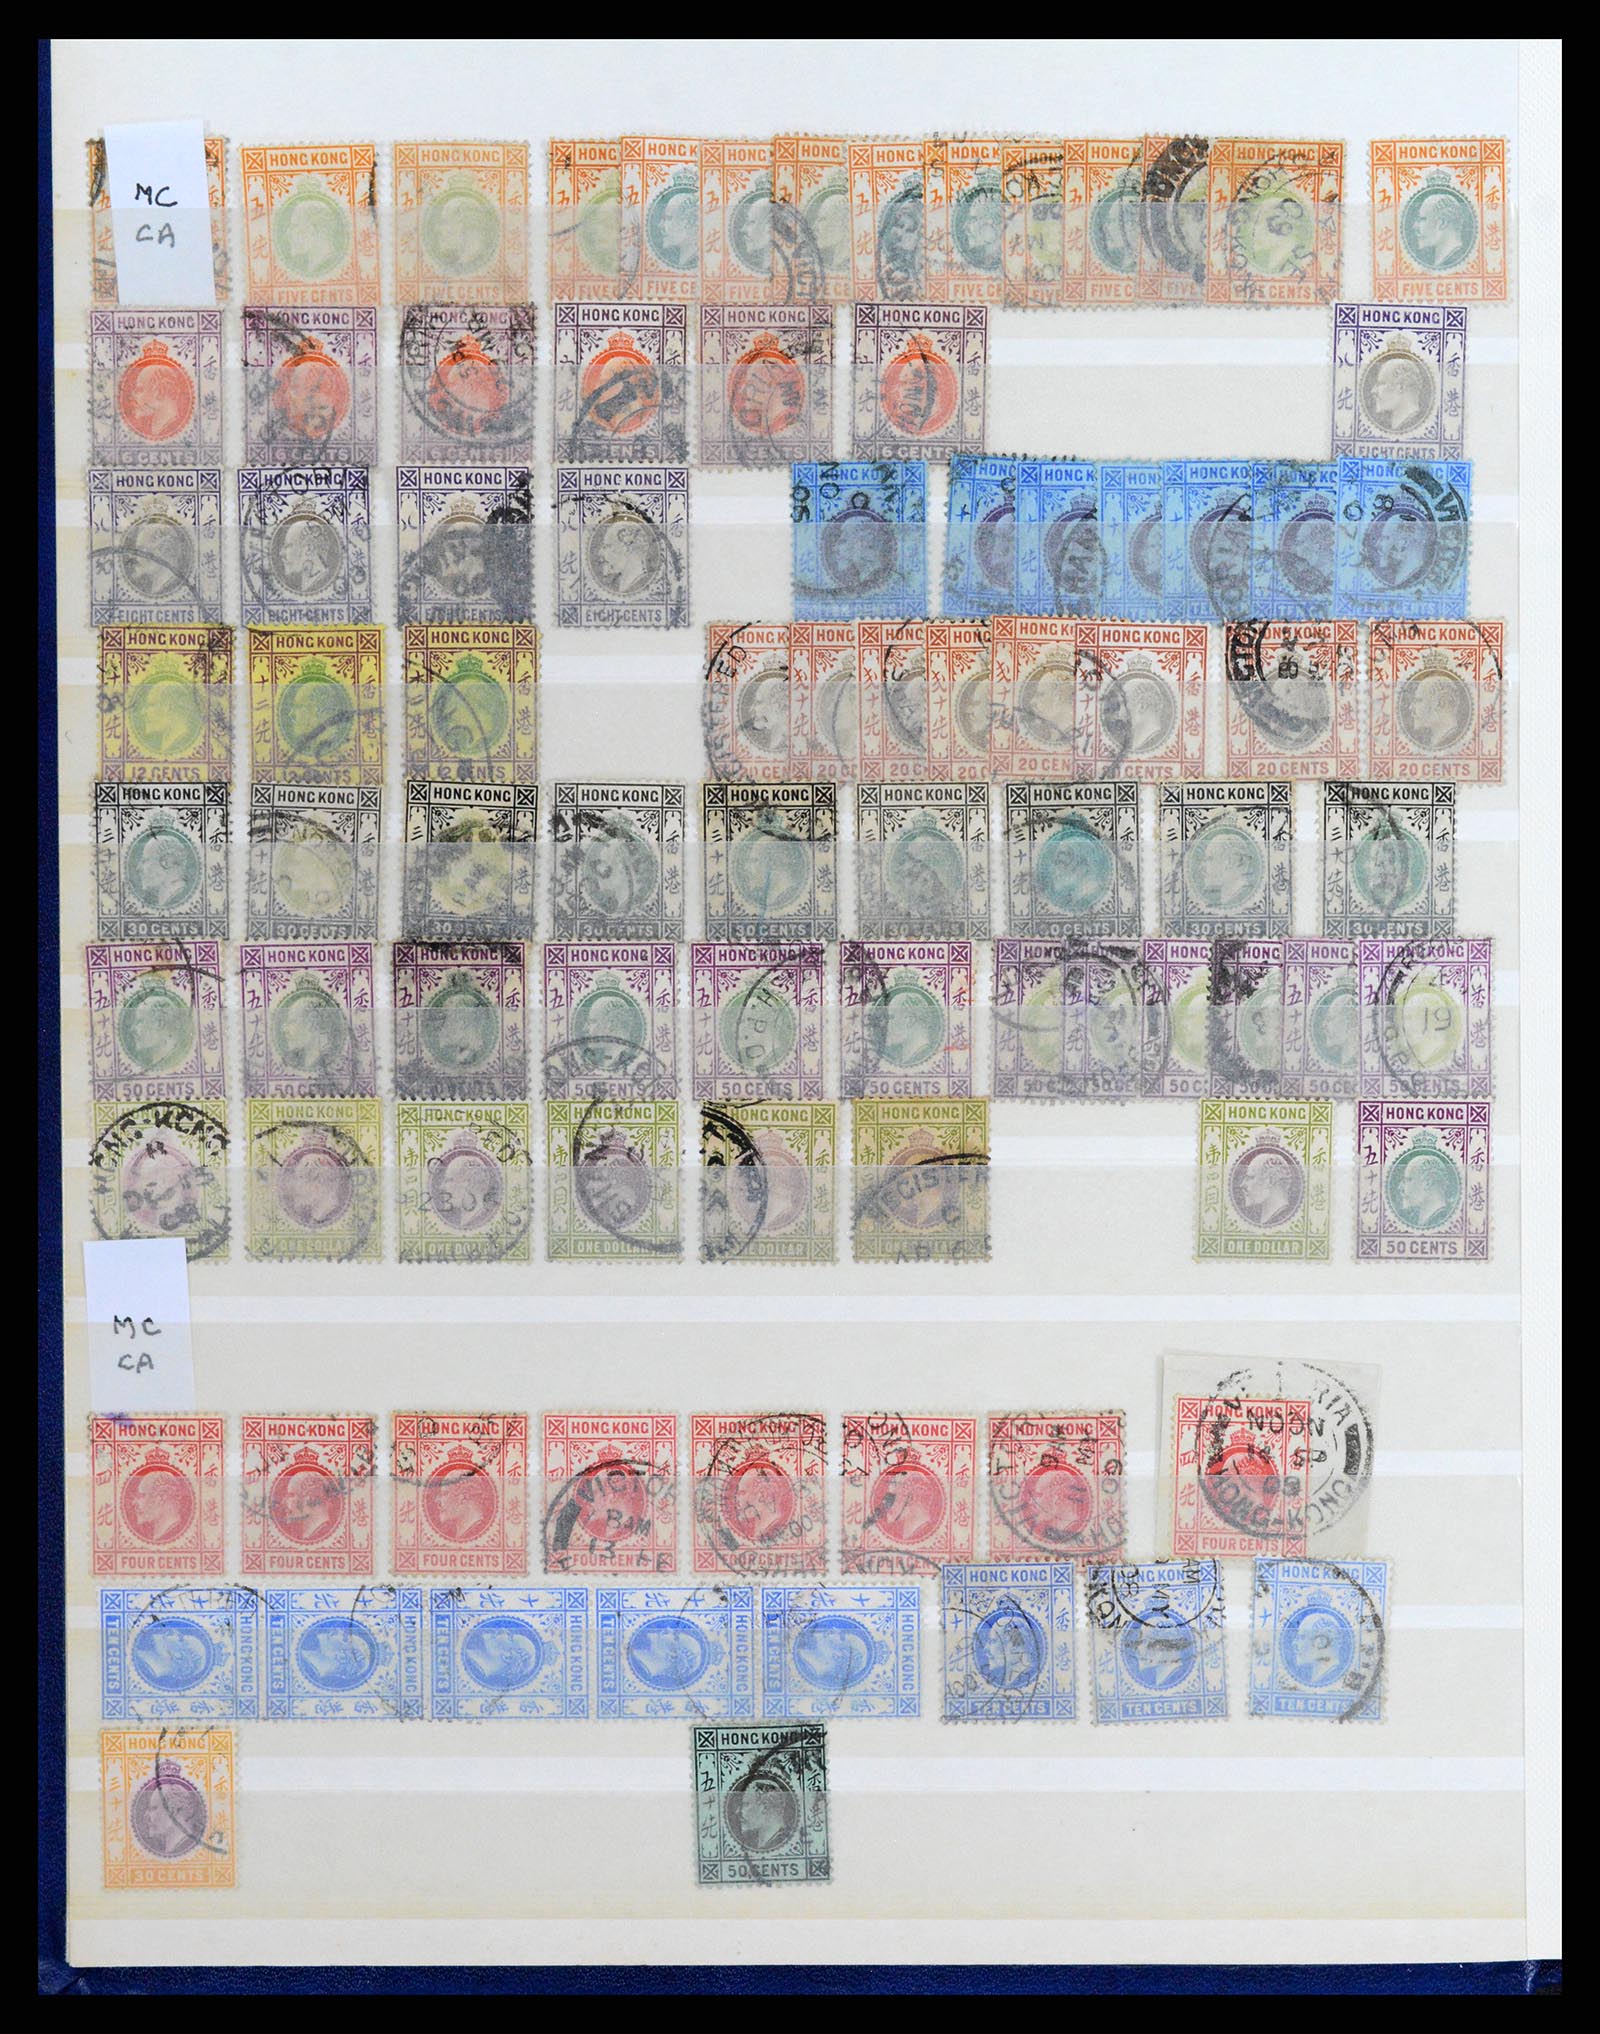 37358 043 - Stamp collection 37358 Hong Kong 1861-1997.